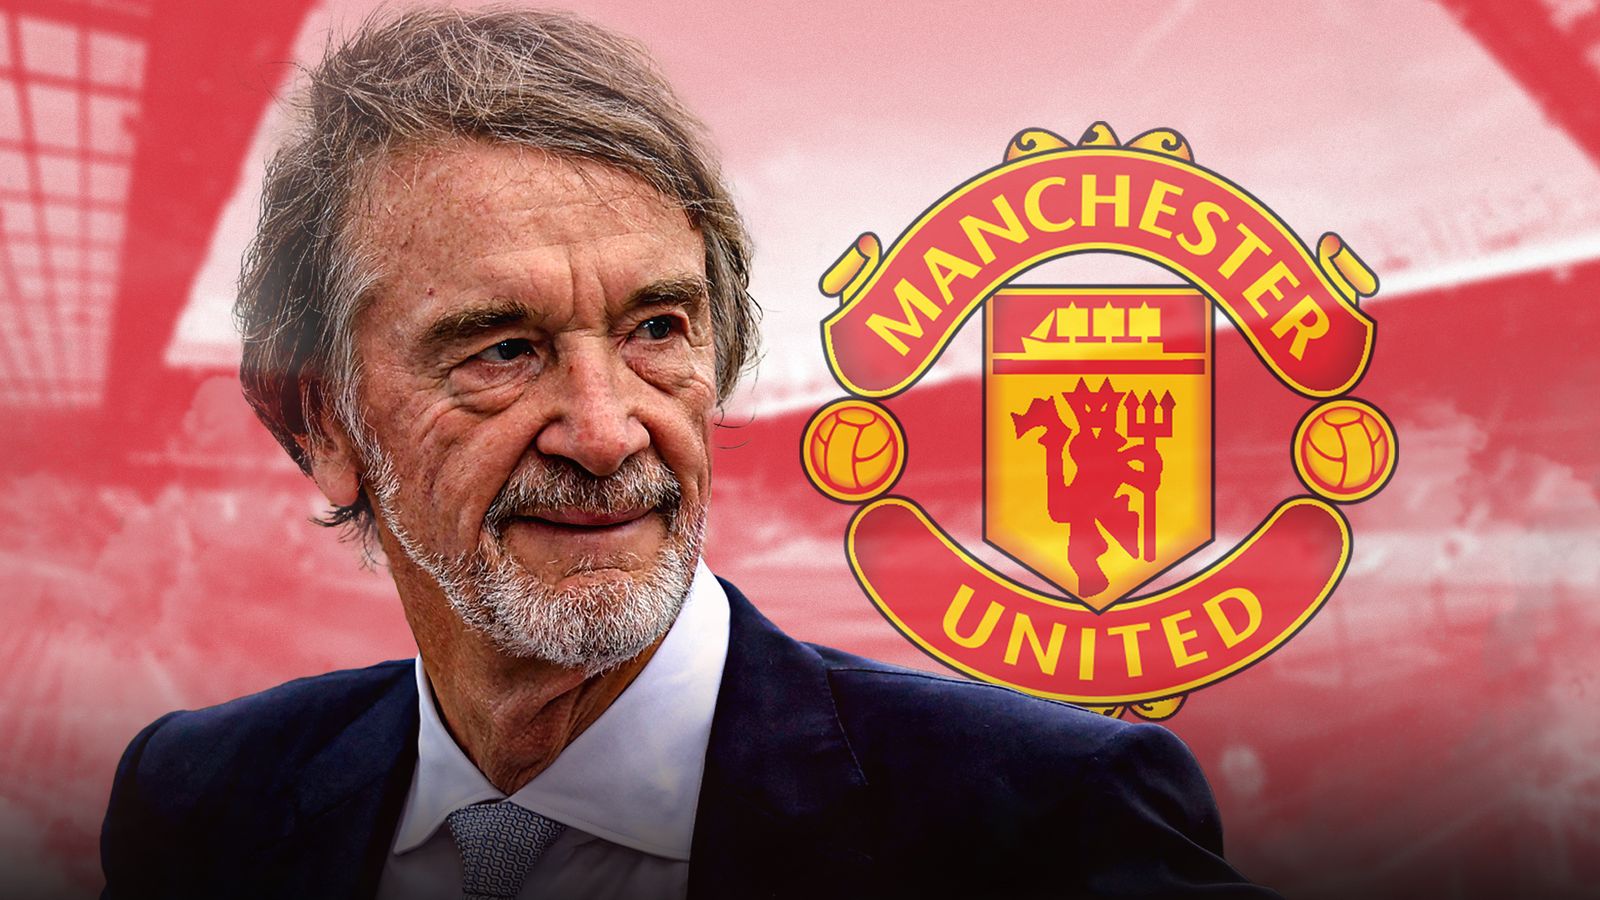 Rachat de Manchester United : l'accord de Sir Jim Ratcliffe pour acheter 25 pour cent du club sera annoncé |  actualités du football